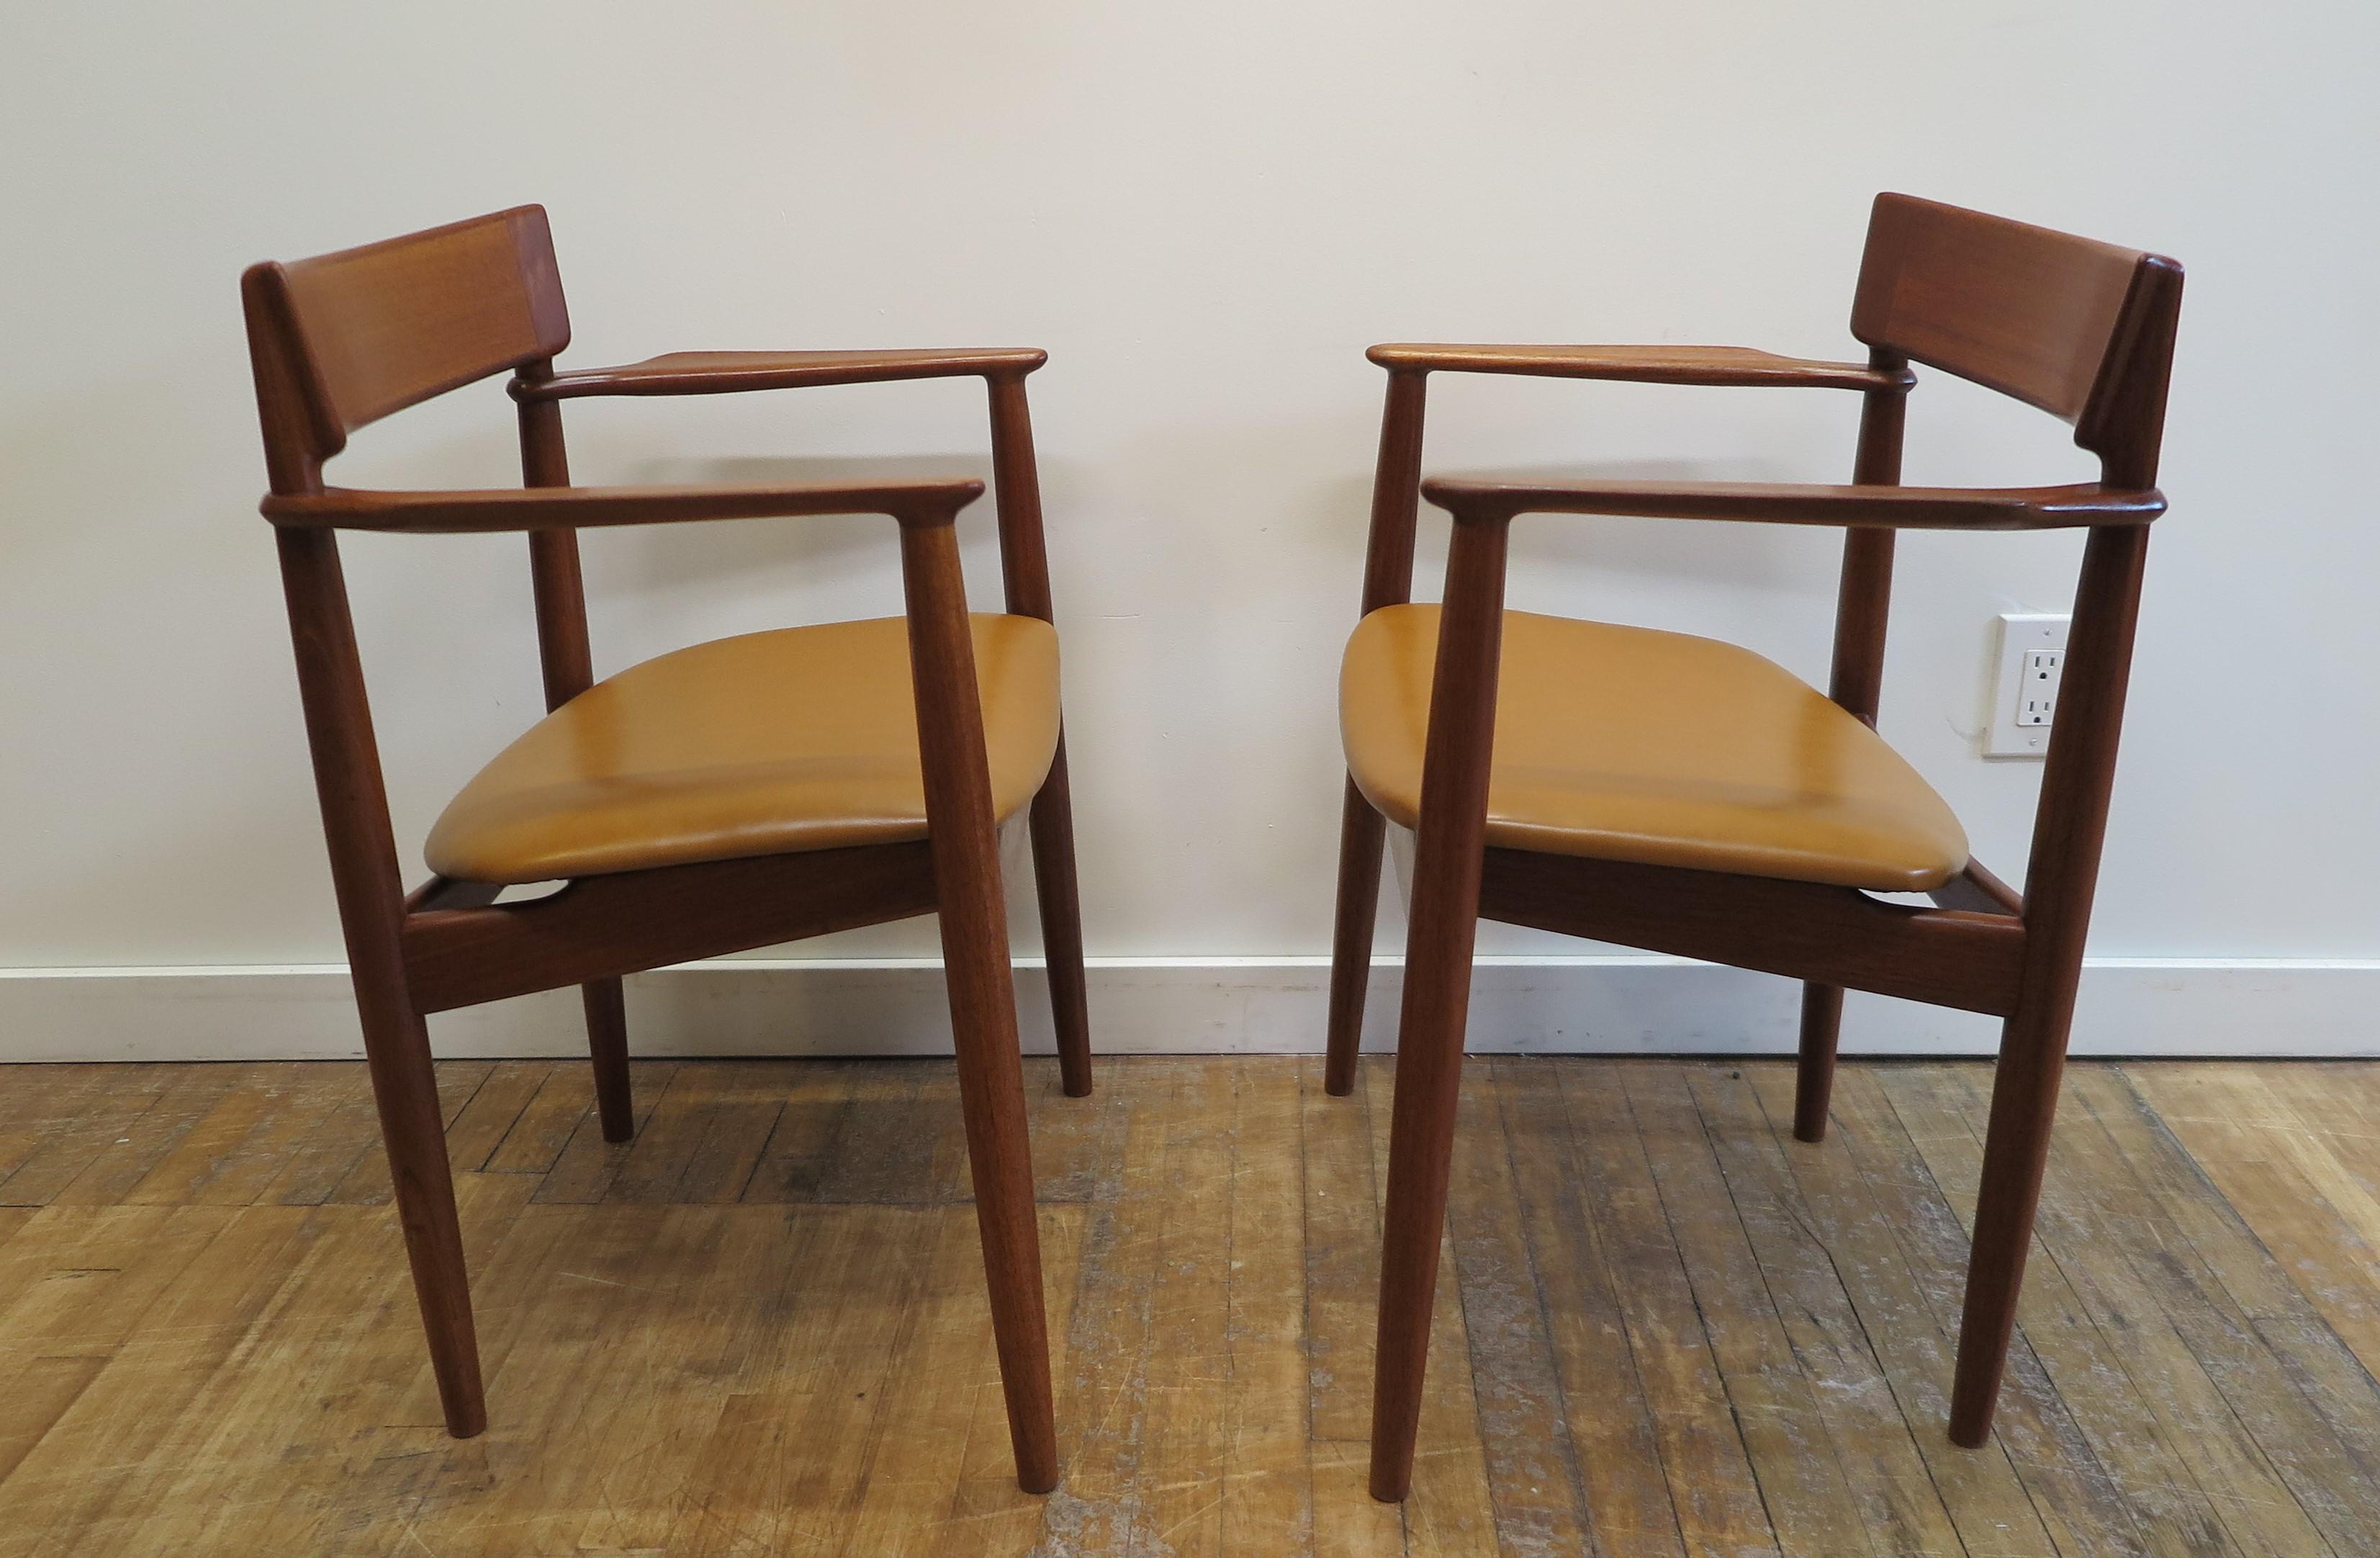 Henry Rosengren Hansesn Fauteuils.  Superbe paire de fauteuils sculptés en bois de rose de Henry Hansen produits par Brande Mobelindustri au Danemark. 
Une belle qualité esthétique qui témoigne d'un travail artisanal exceptionnel.  Les chaises sont